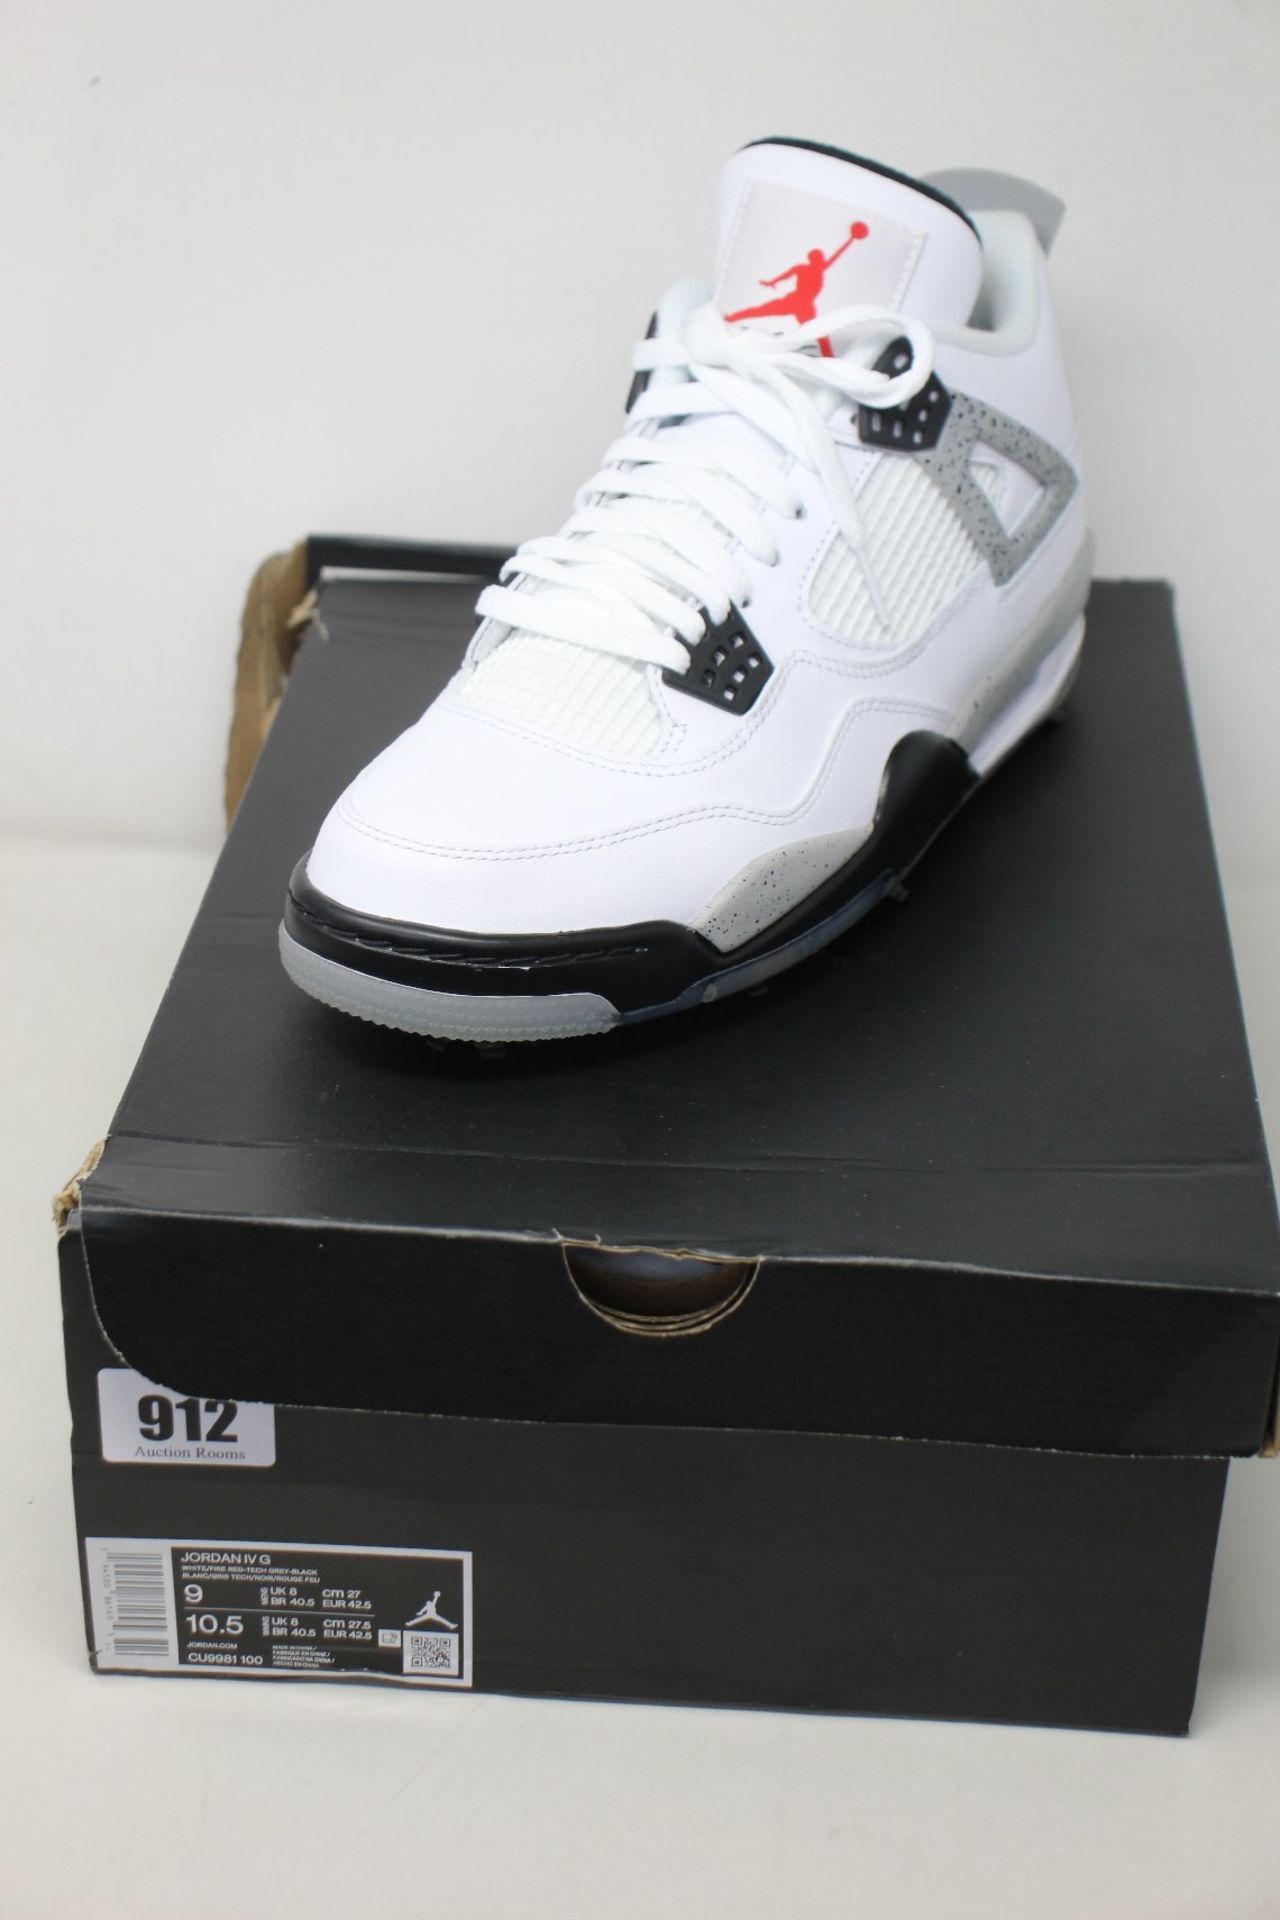 A pair of as new Nike Jordan IV G (UK 8).